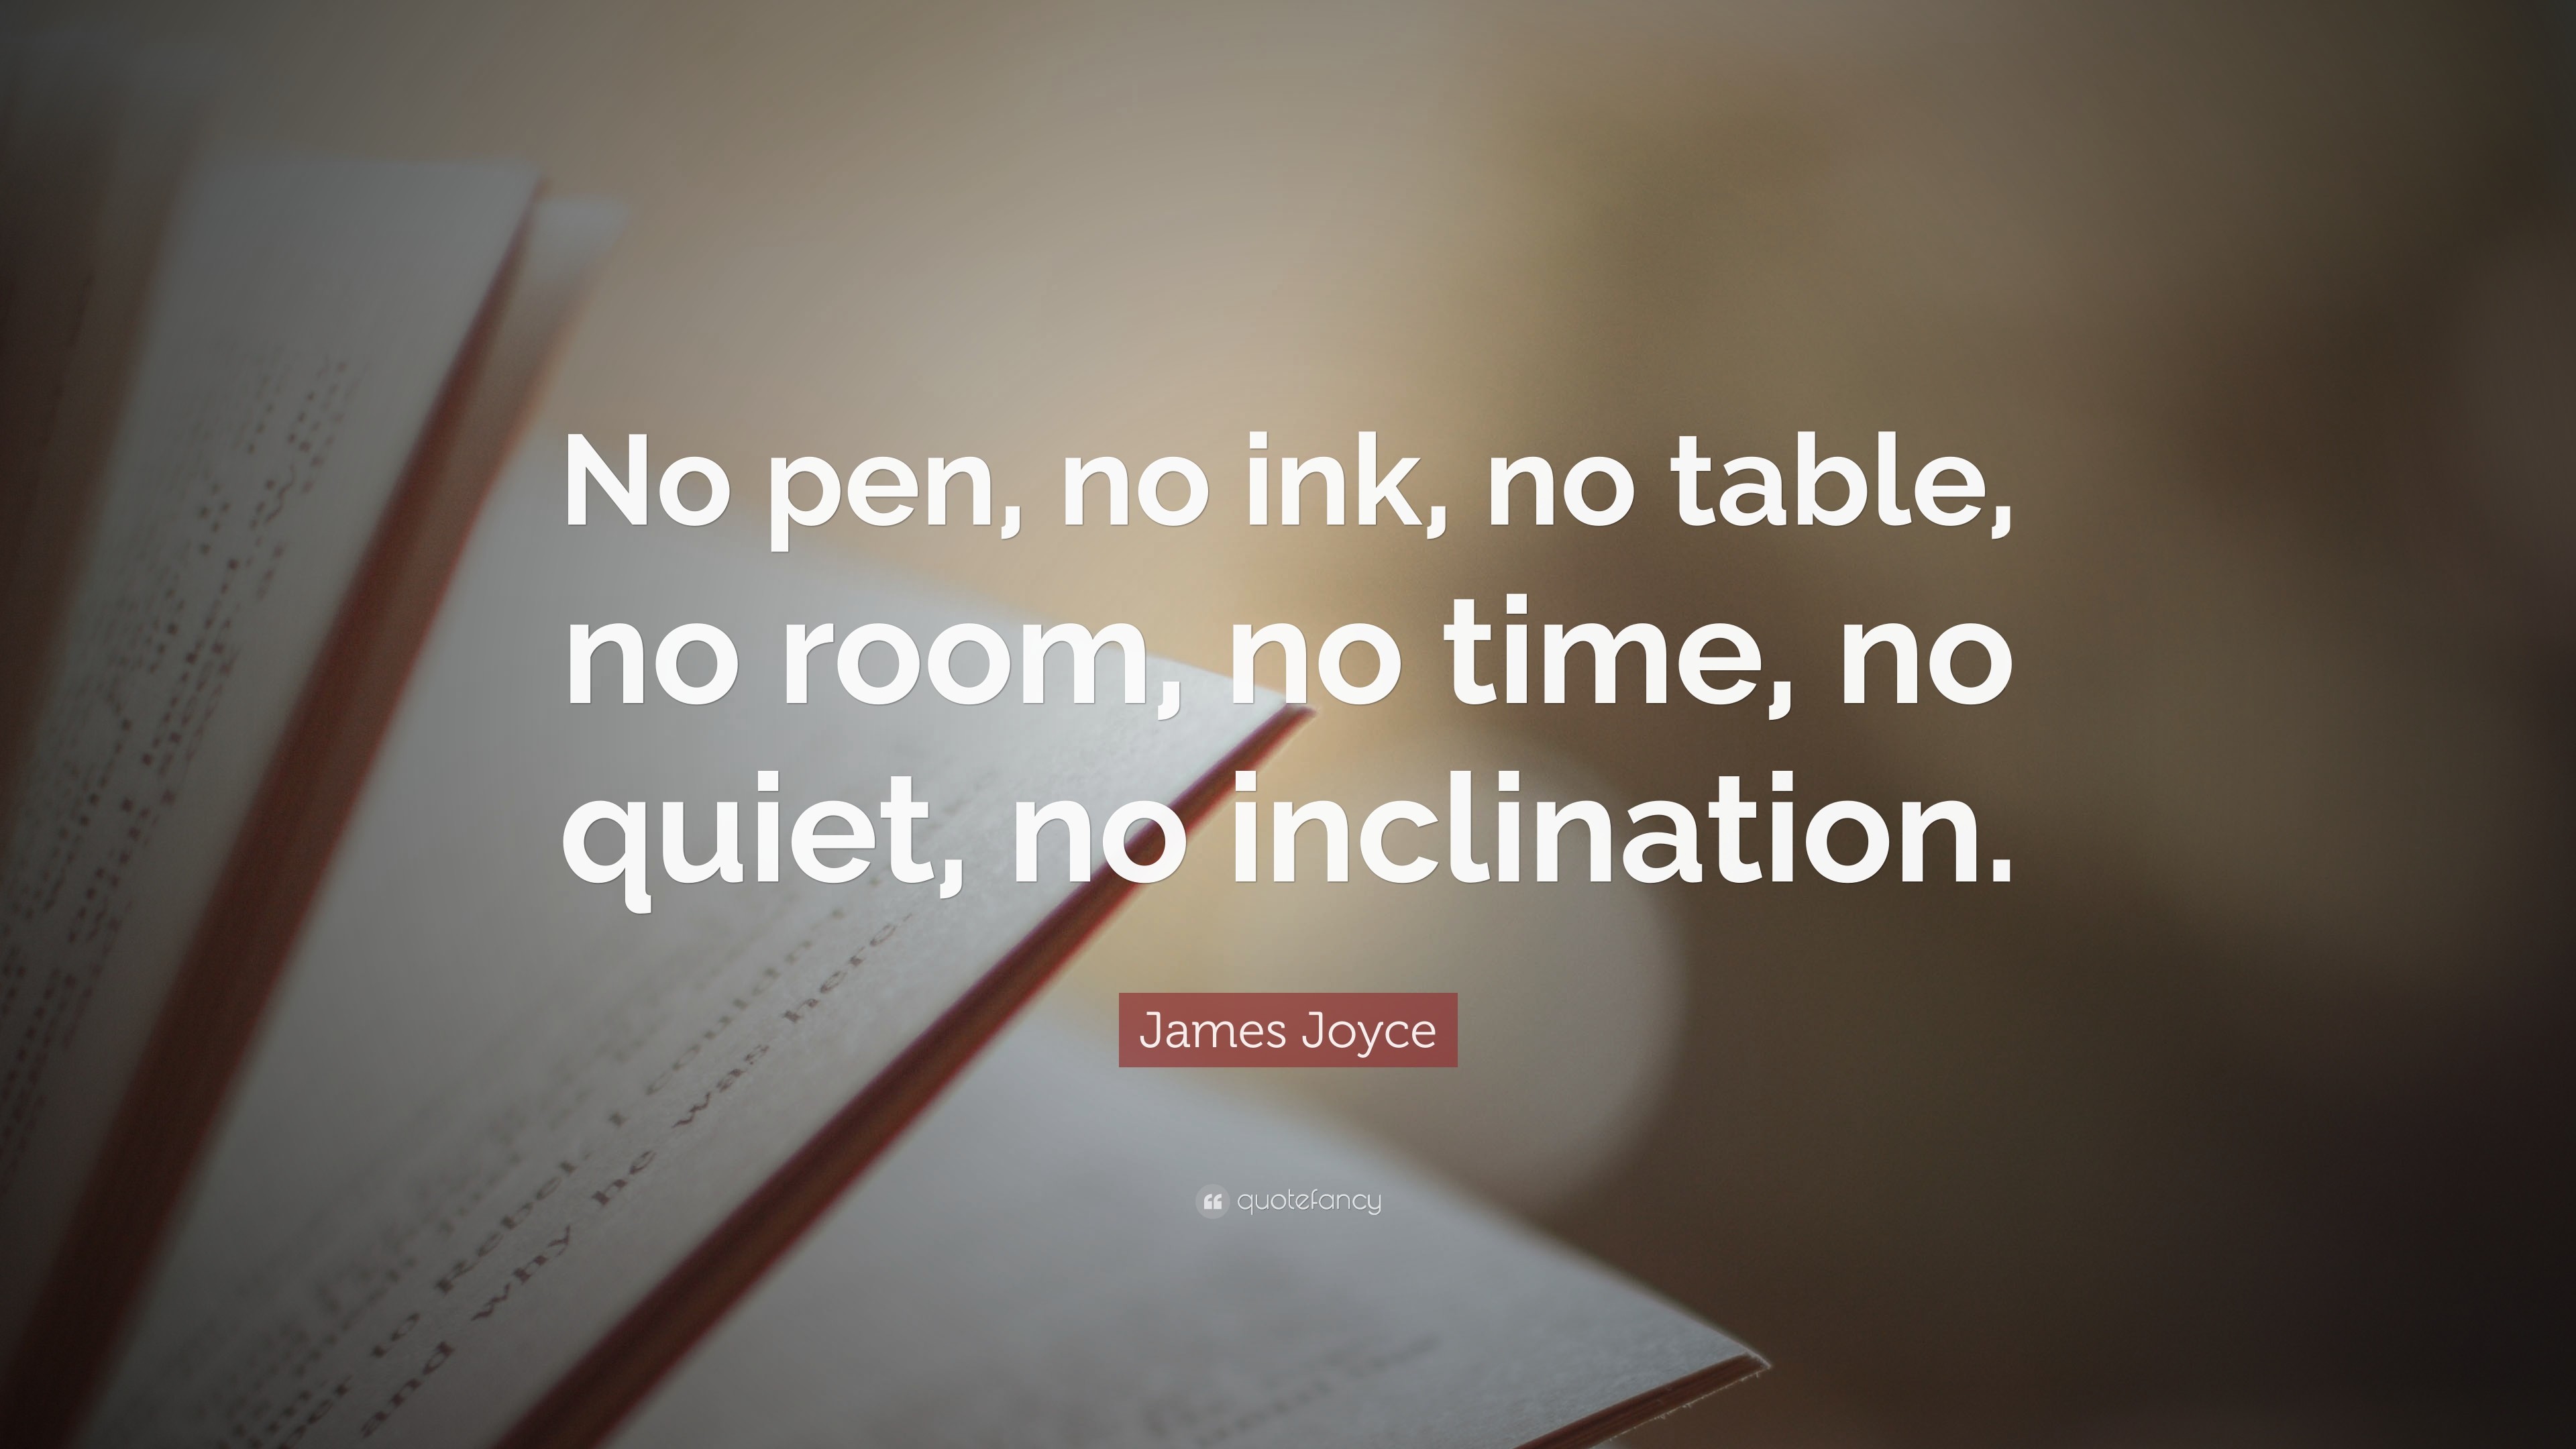 3840x2160 James Joyce Quote: “No pen, no ink, no table, no room